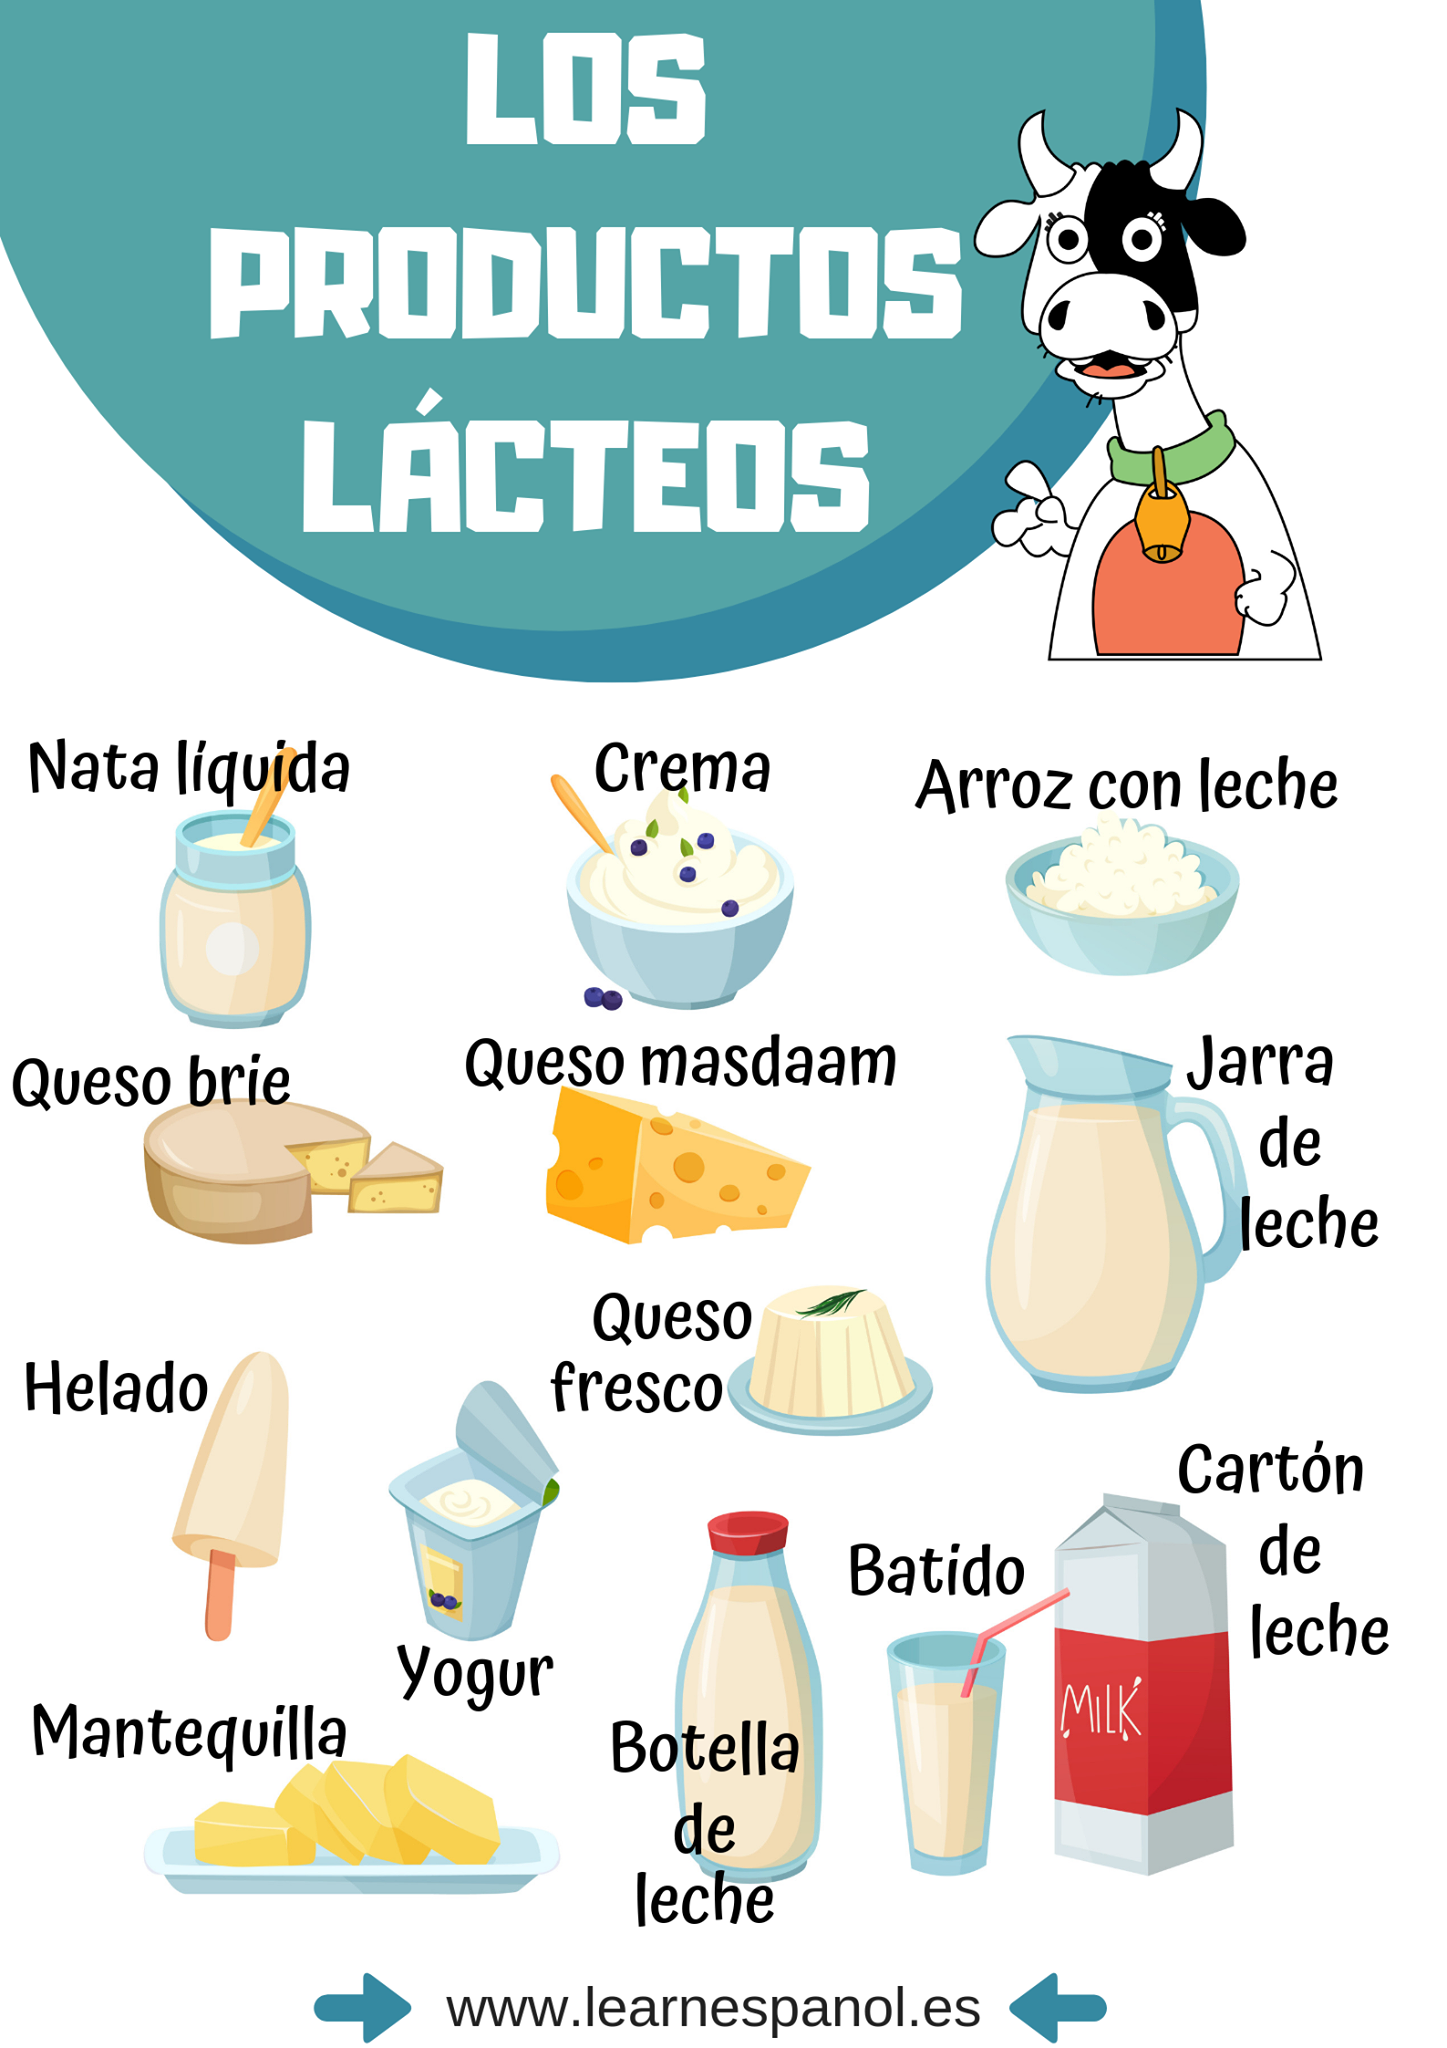 Los productos lacteos